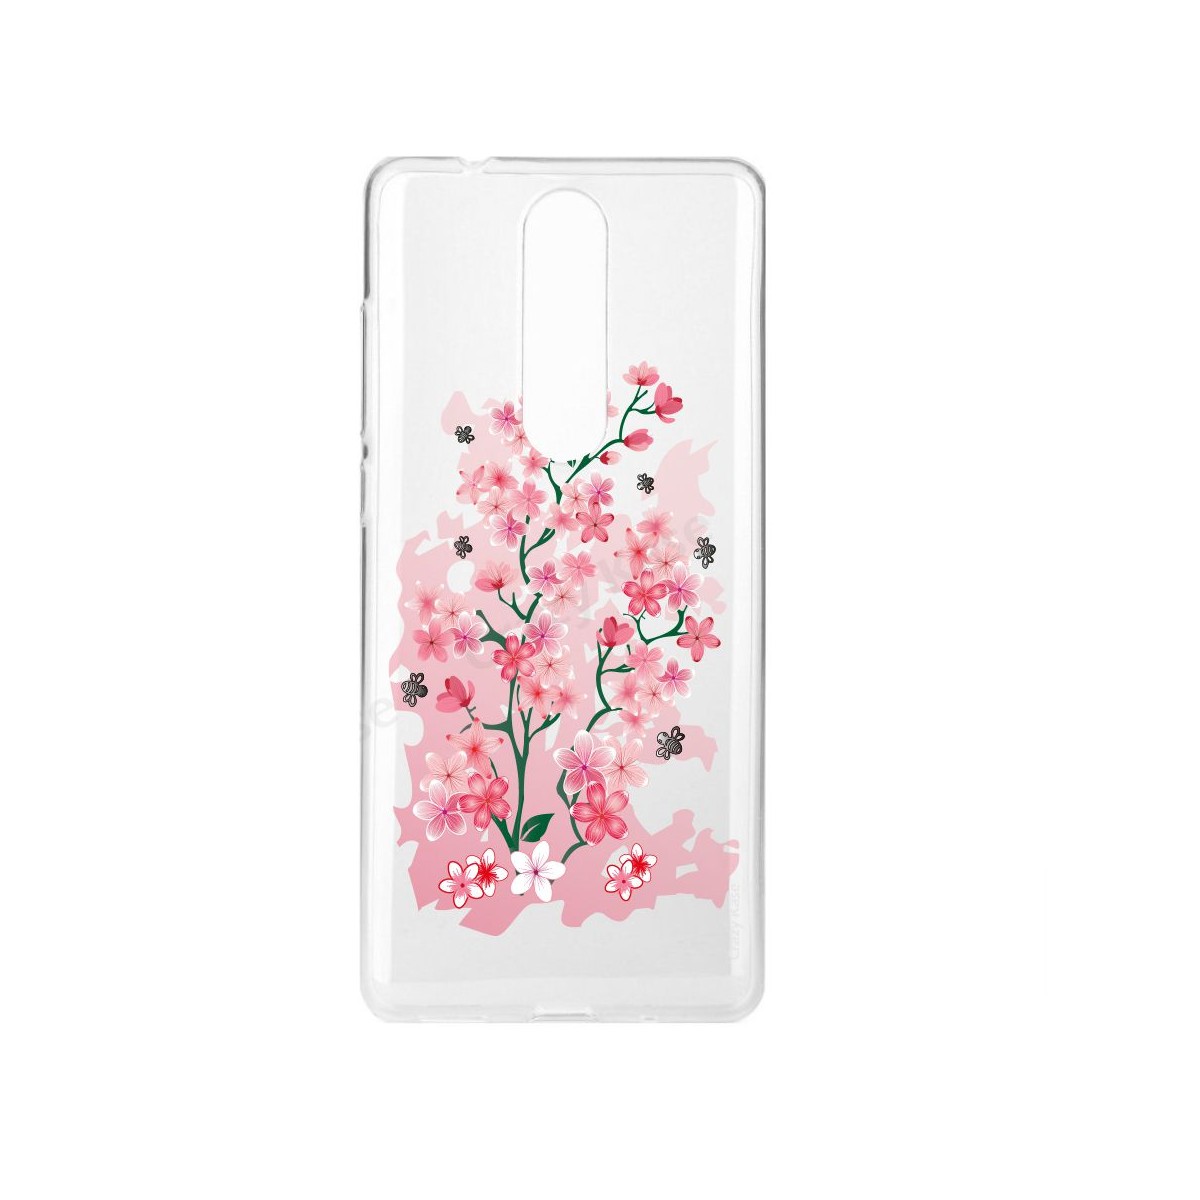 Coque Nokia 5.1 souple motif Fleurs de Cerisier - Crazy Kase